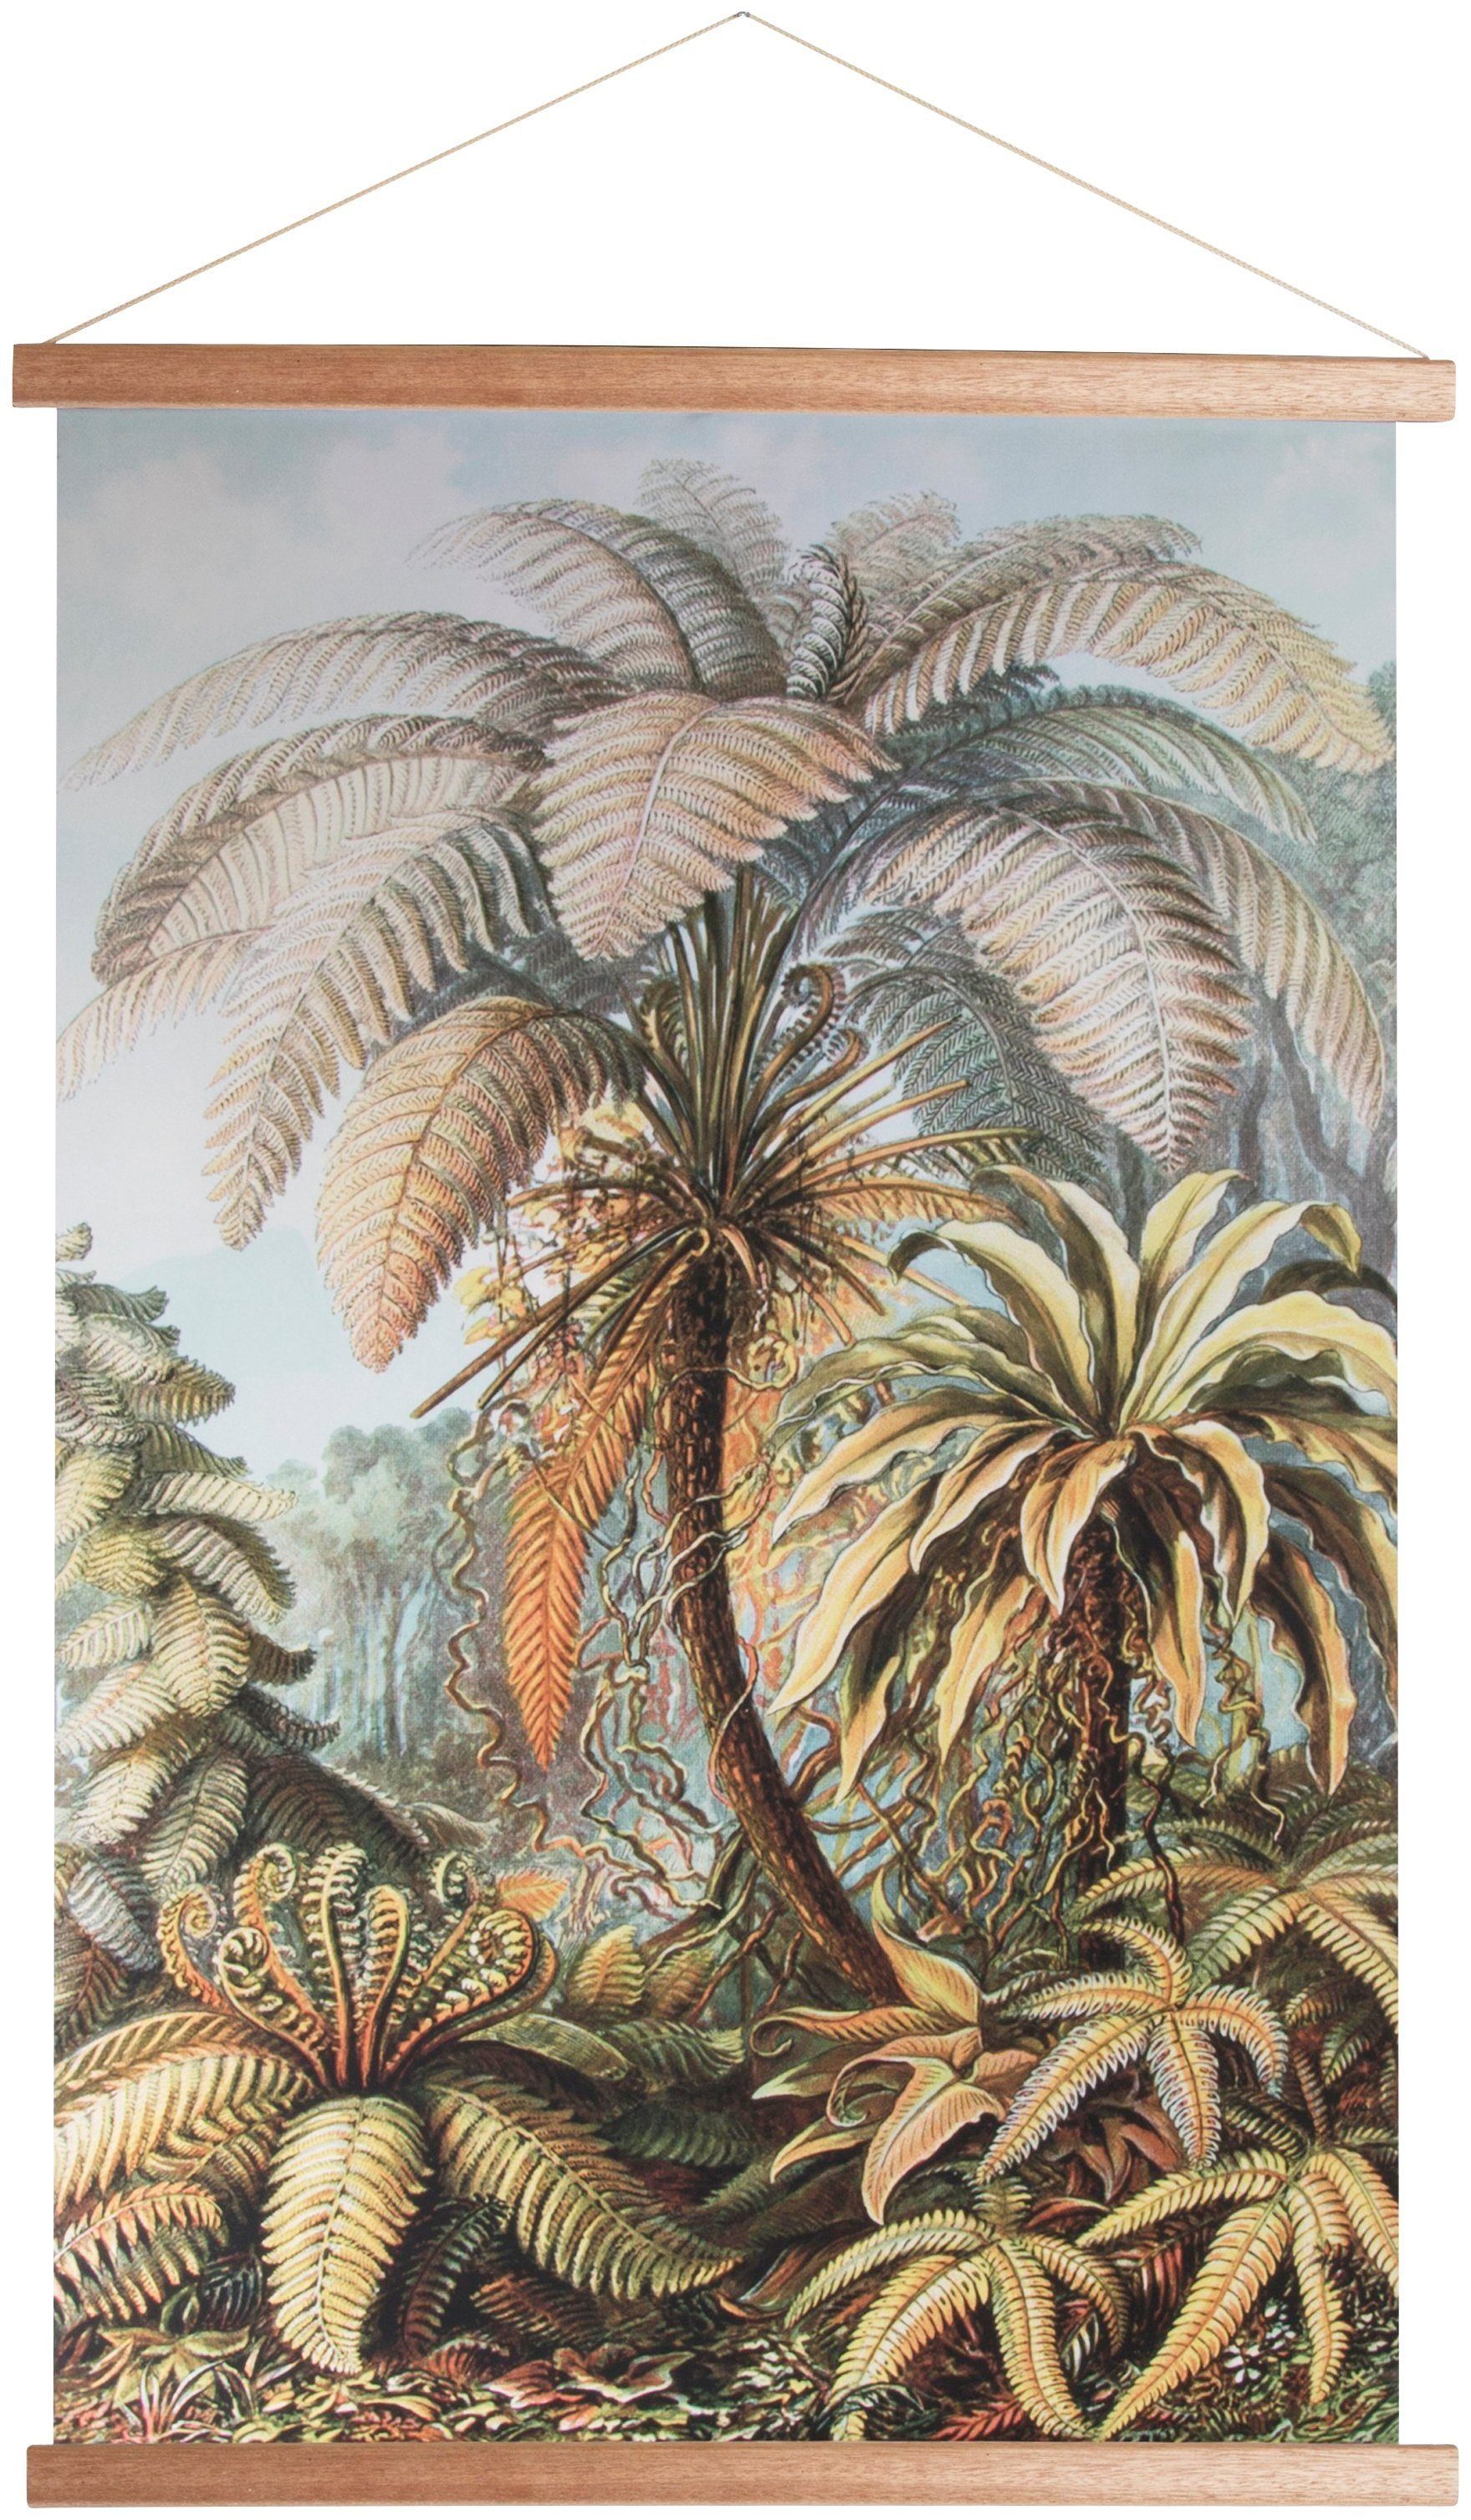 Art for Dschungel, Poster, 100x70cm, Pflanzen, Bild, the Poster home Wandbild, Wandposter